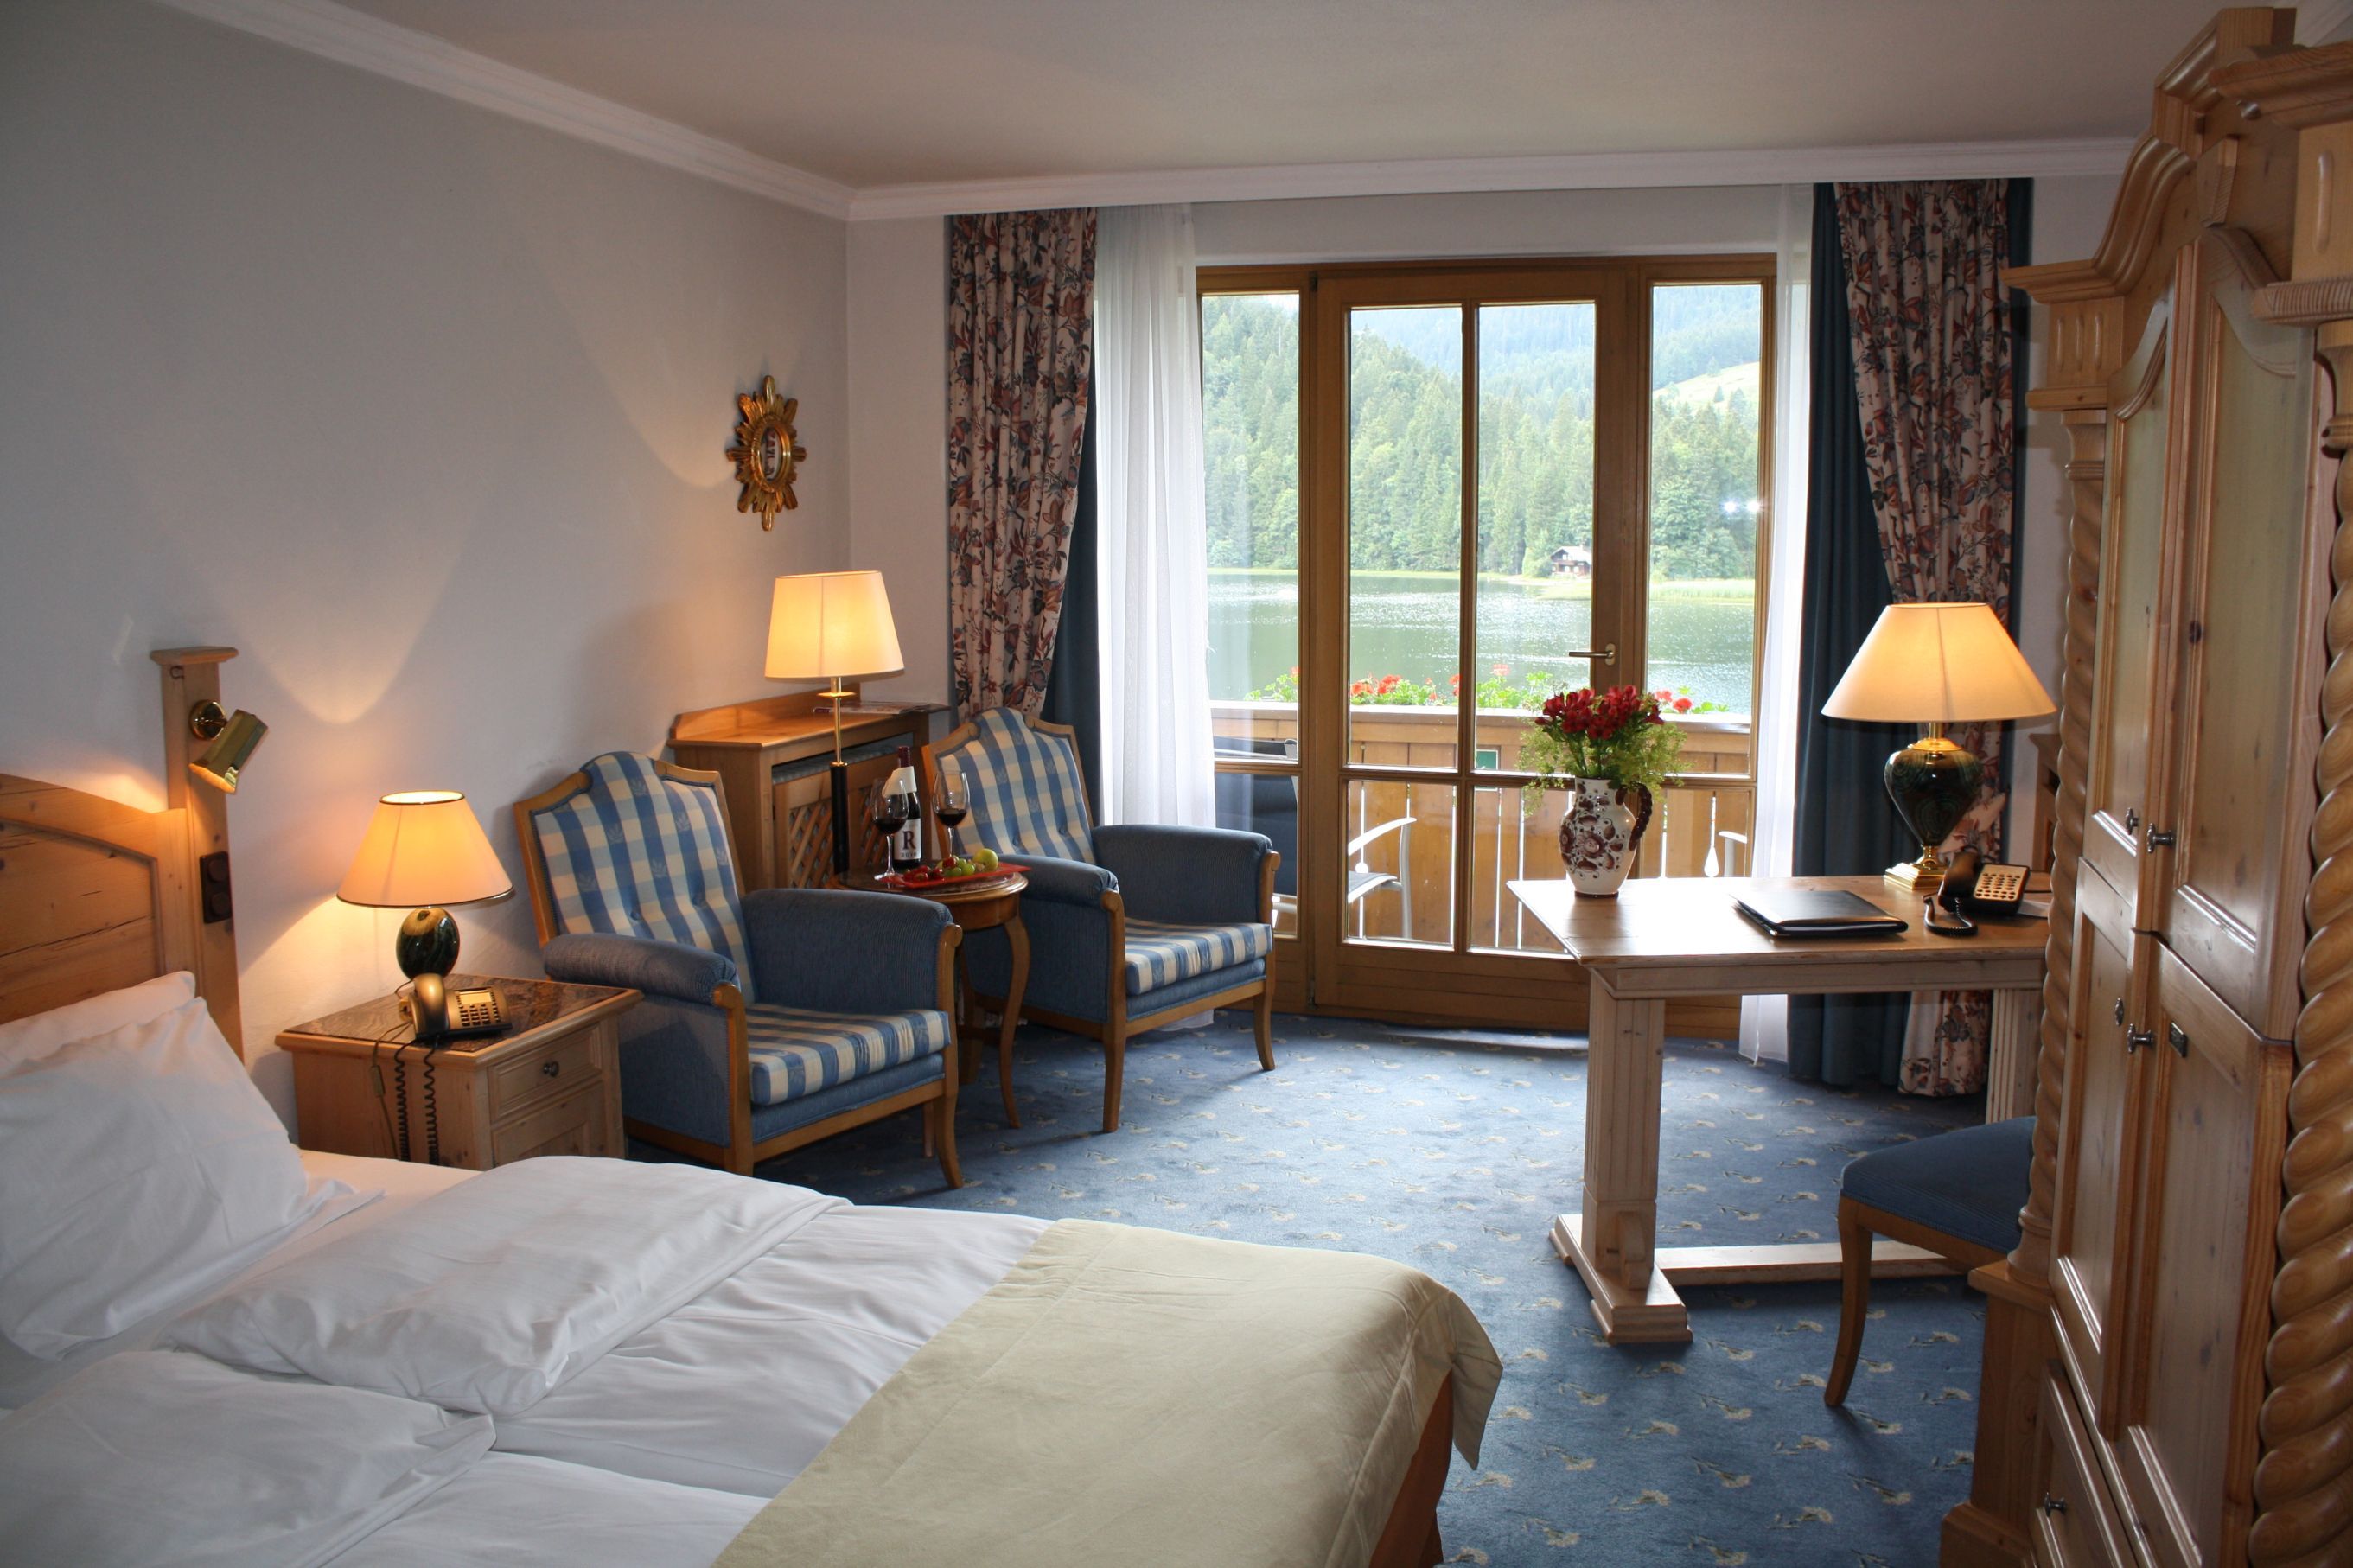 Zimmer mit Seeblick im Arabella Alpenhotel am Spitzingsee.
